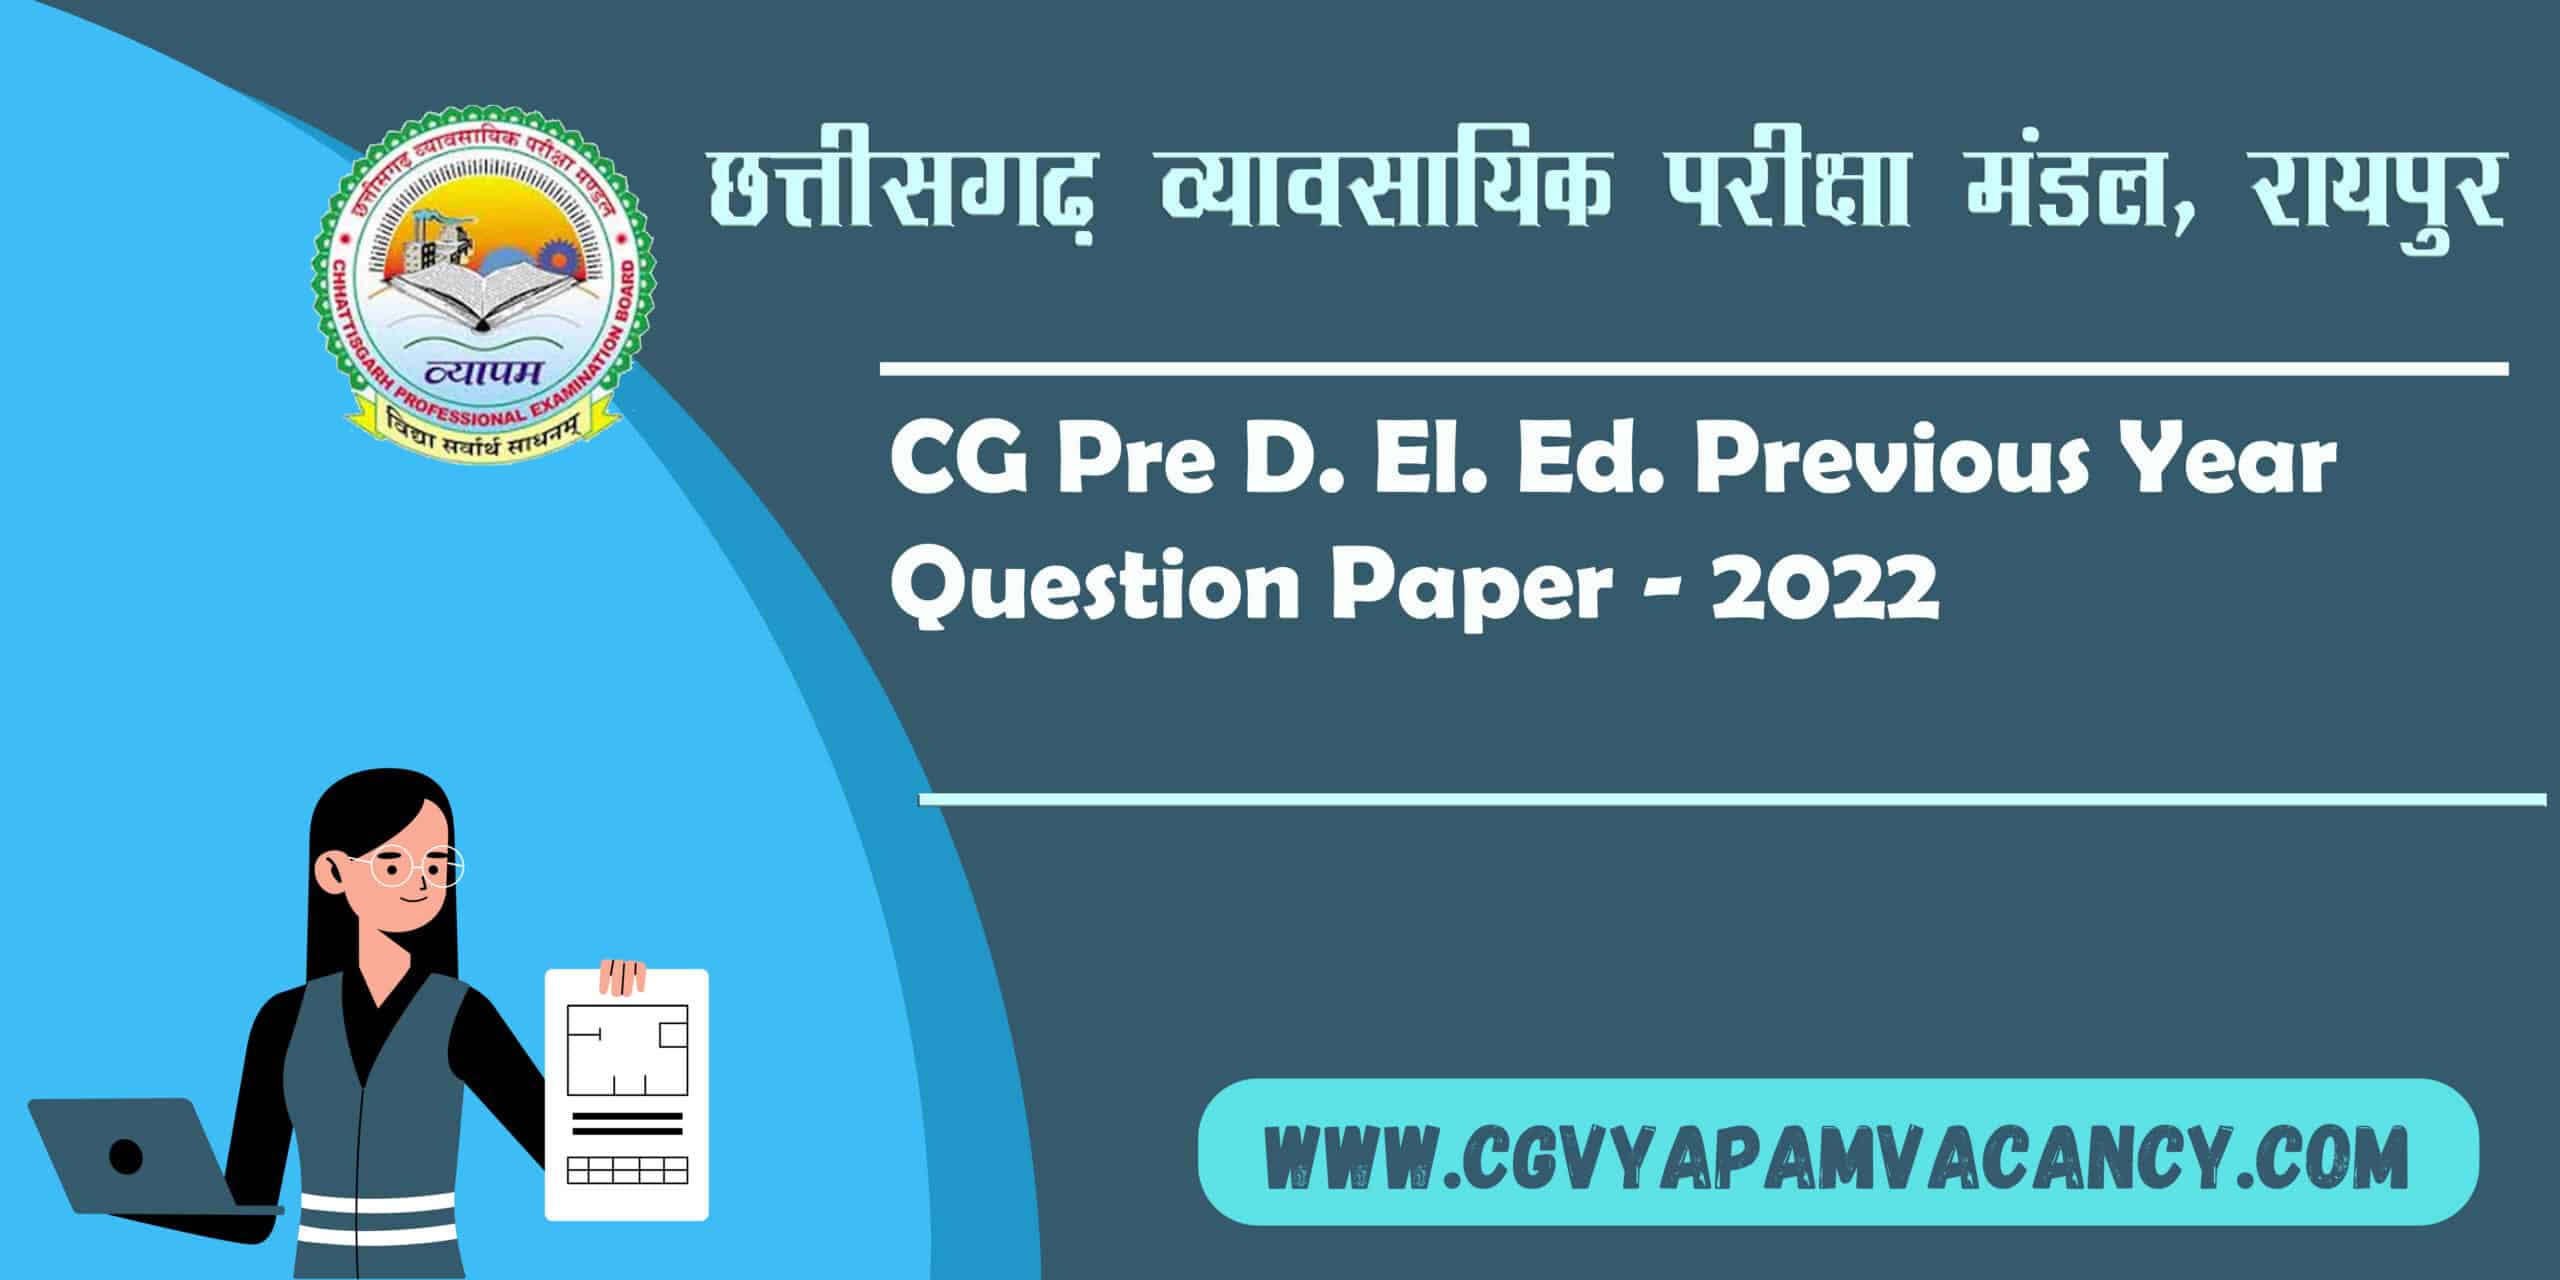 CG Pre D. El. Ed. Previous Year Question Paper - 2022